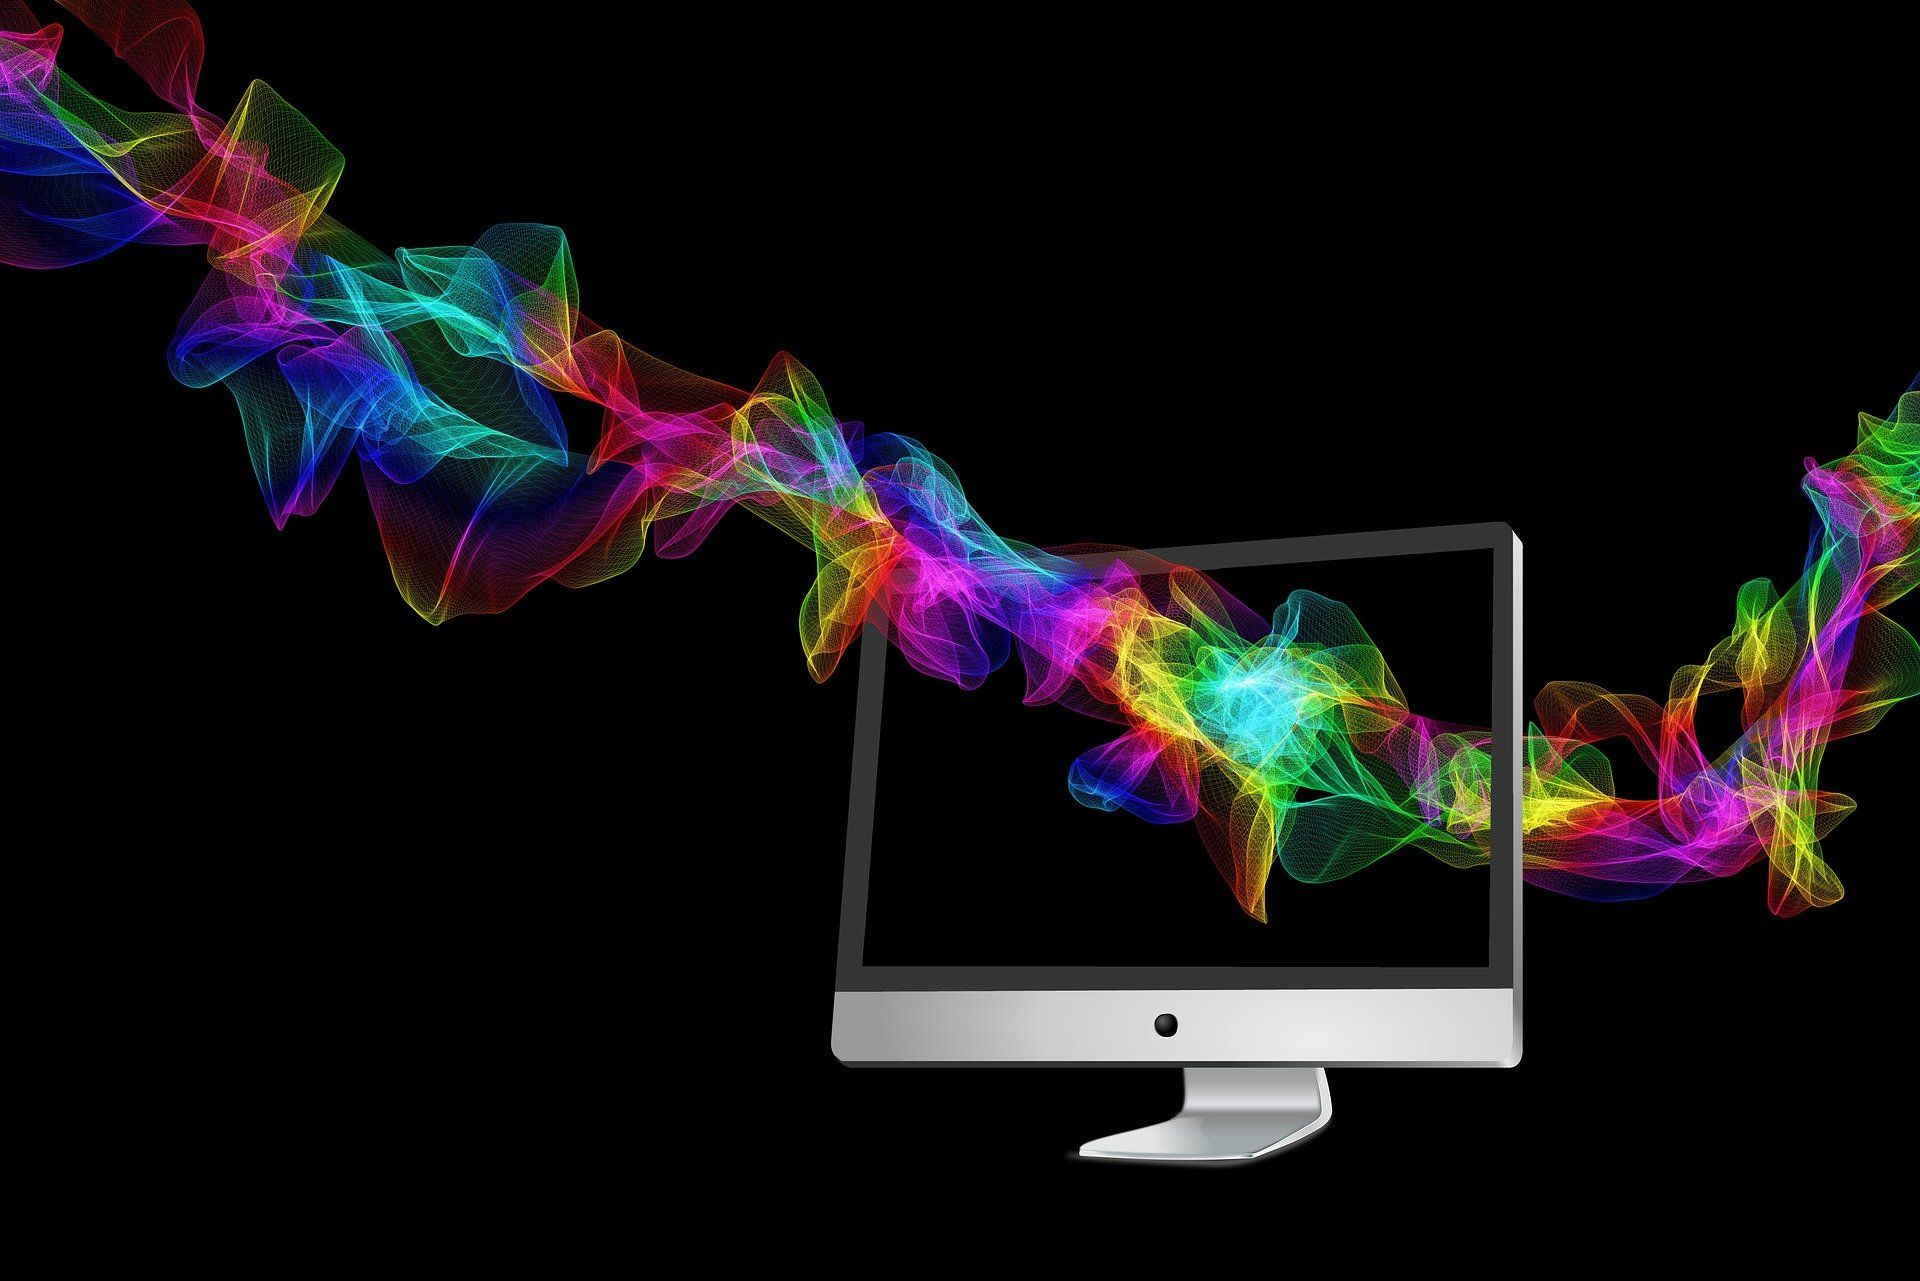 sombras coloridas passam por um monitor de computador, representando a criatividade do design de serviços